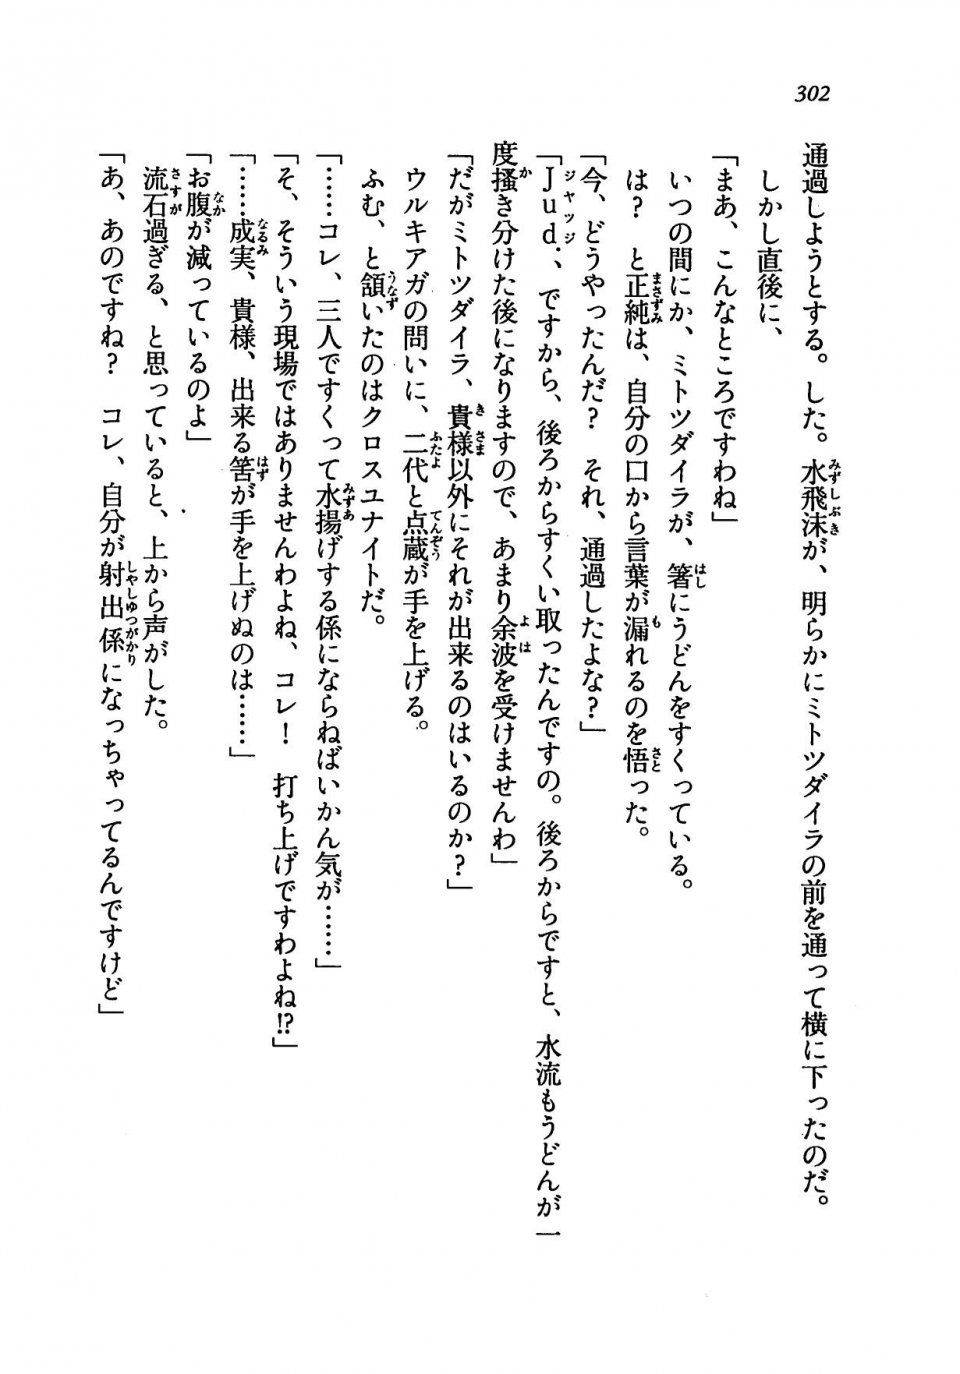 Kyoukai Senjou no Horizon LN Vol 19(8A) - Photo #302